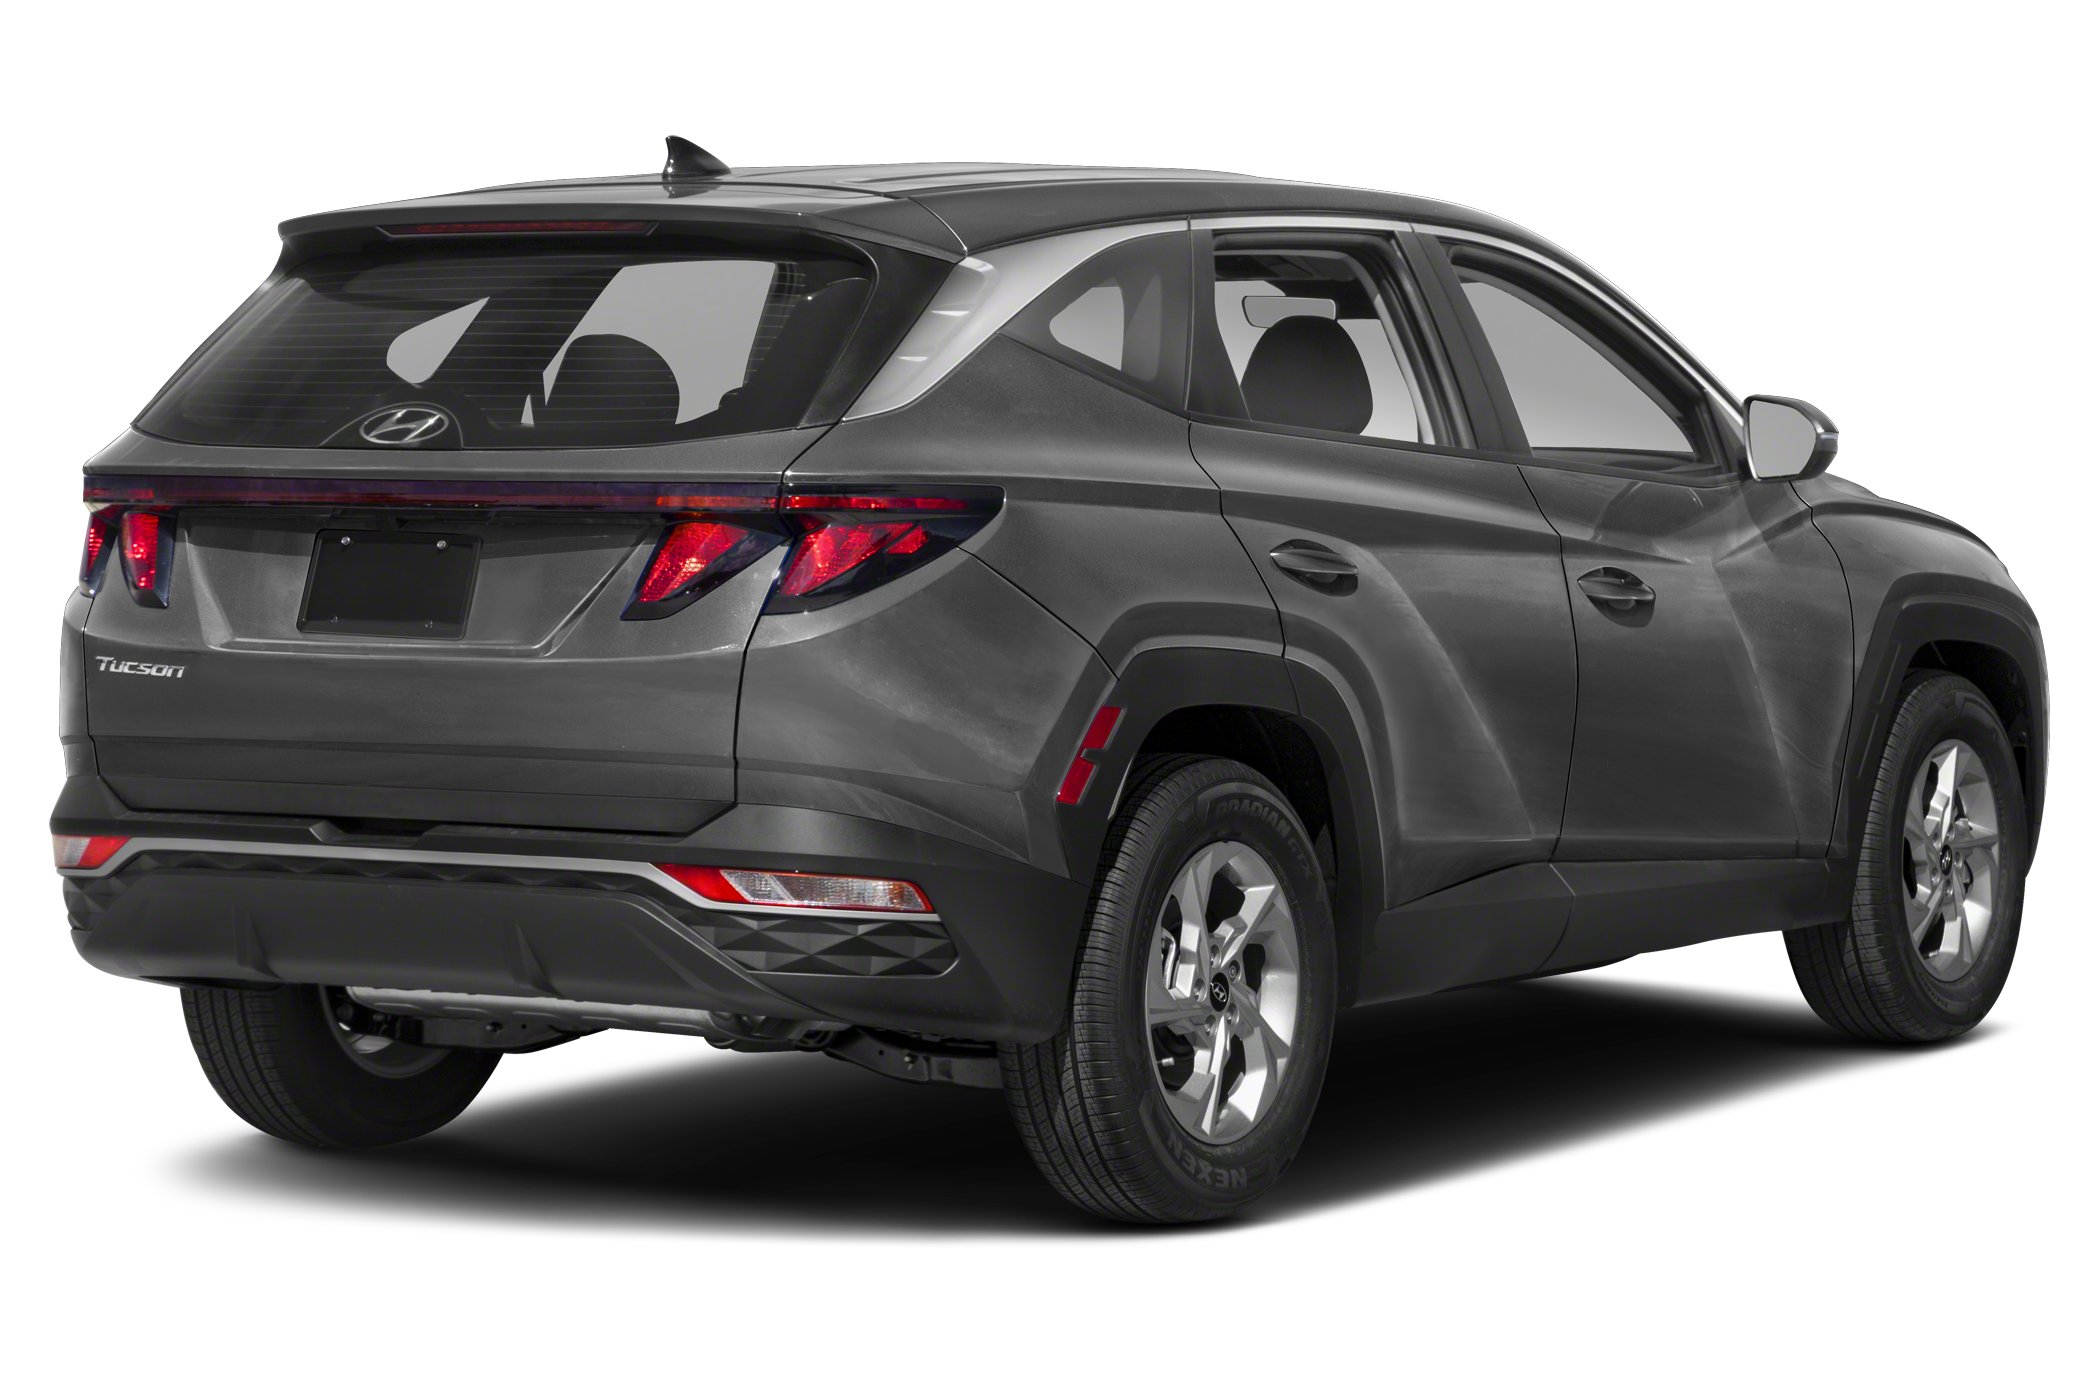 2020 Hyundai Tucson Review & Ratings